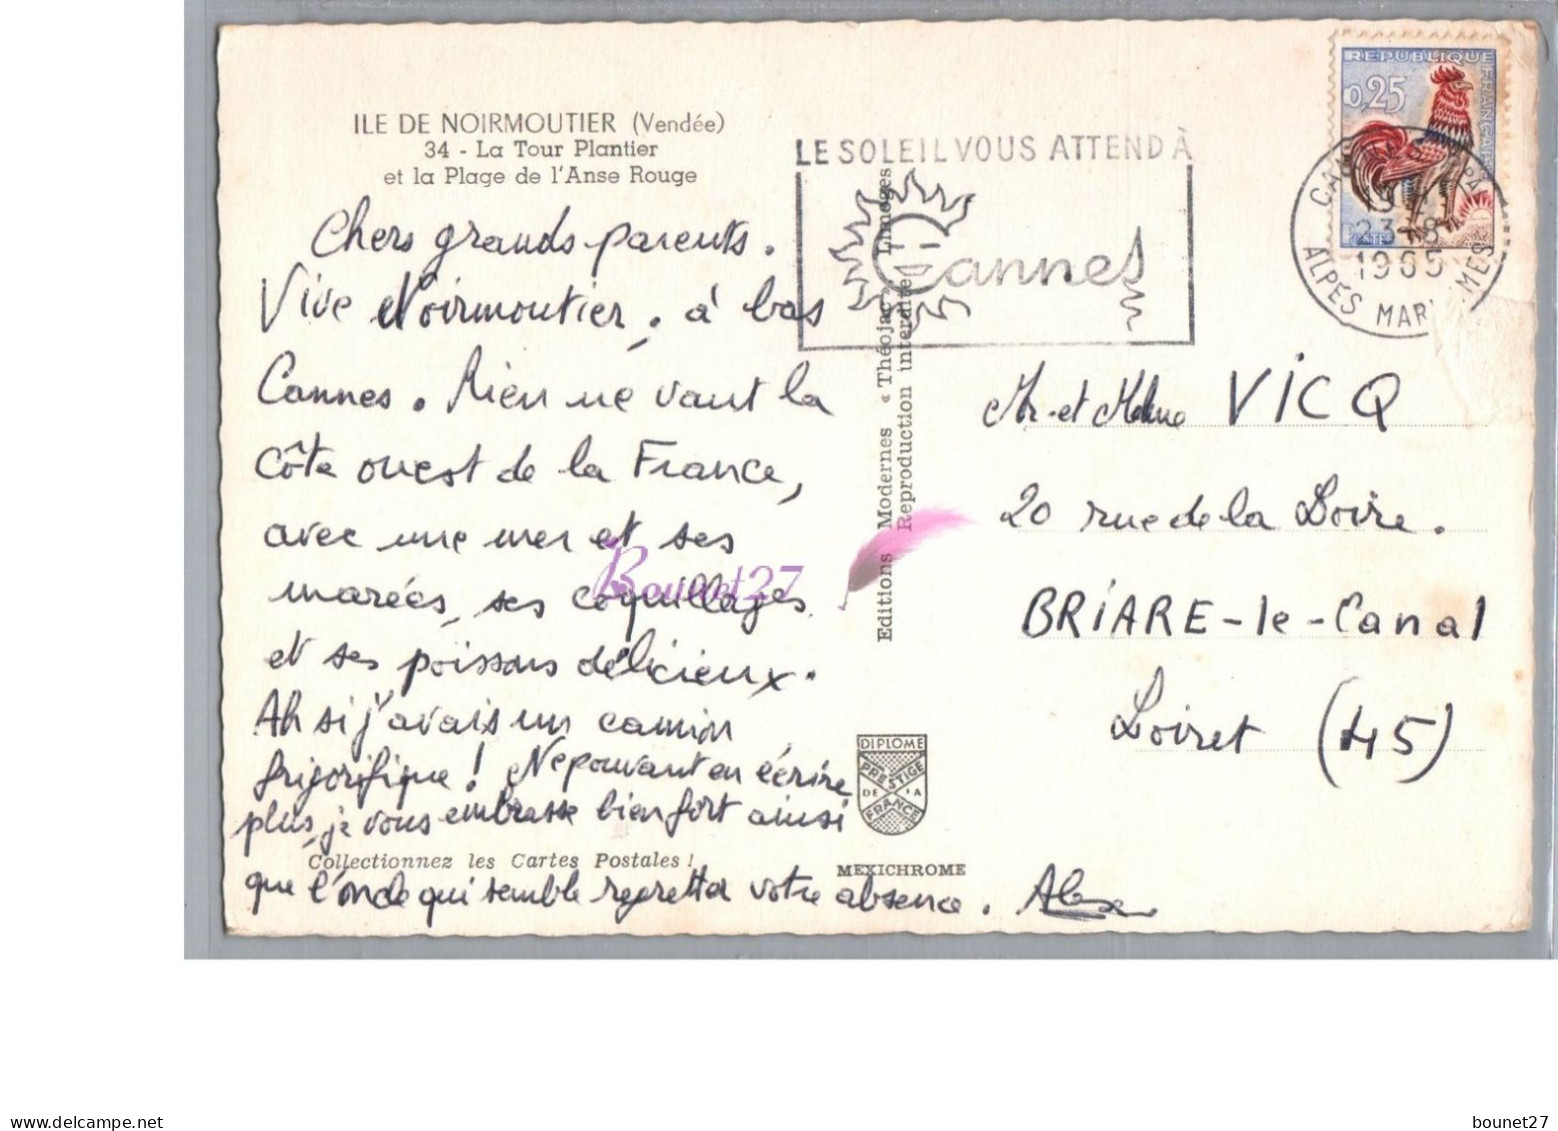 ILE DE NOIRMOUTIER 85 - La Tour Plantier Et La Plage De L'Anse Rouge 1965 - Ile De Noirmoutier